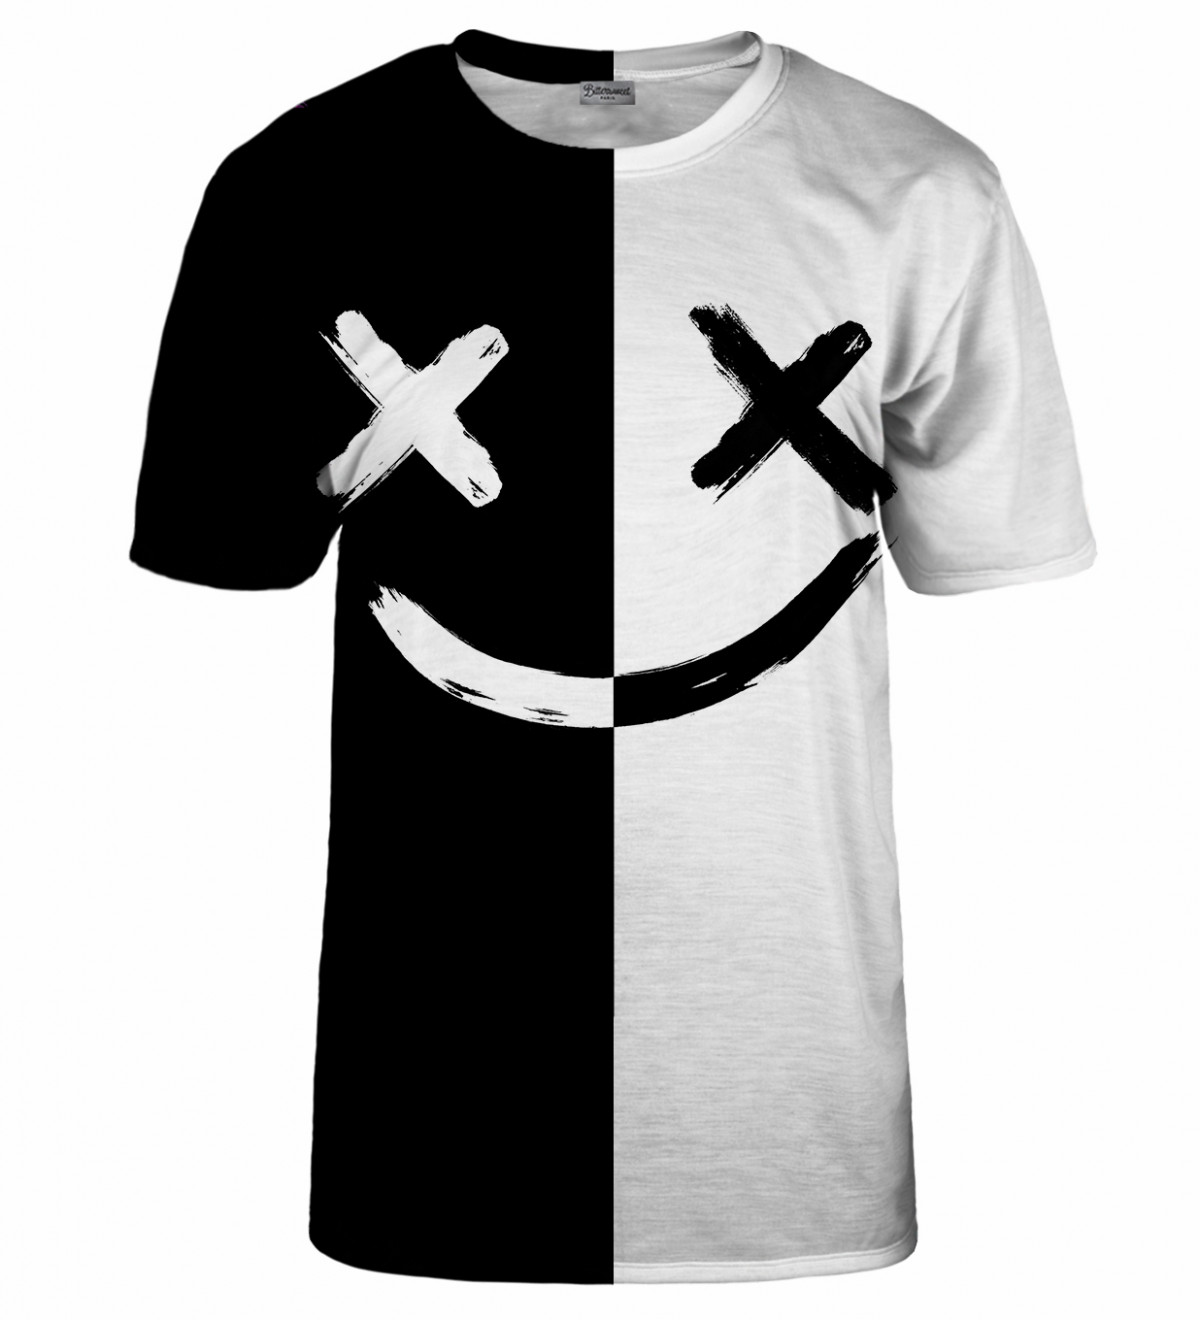 B&W Face T-Shirt - XL